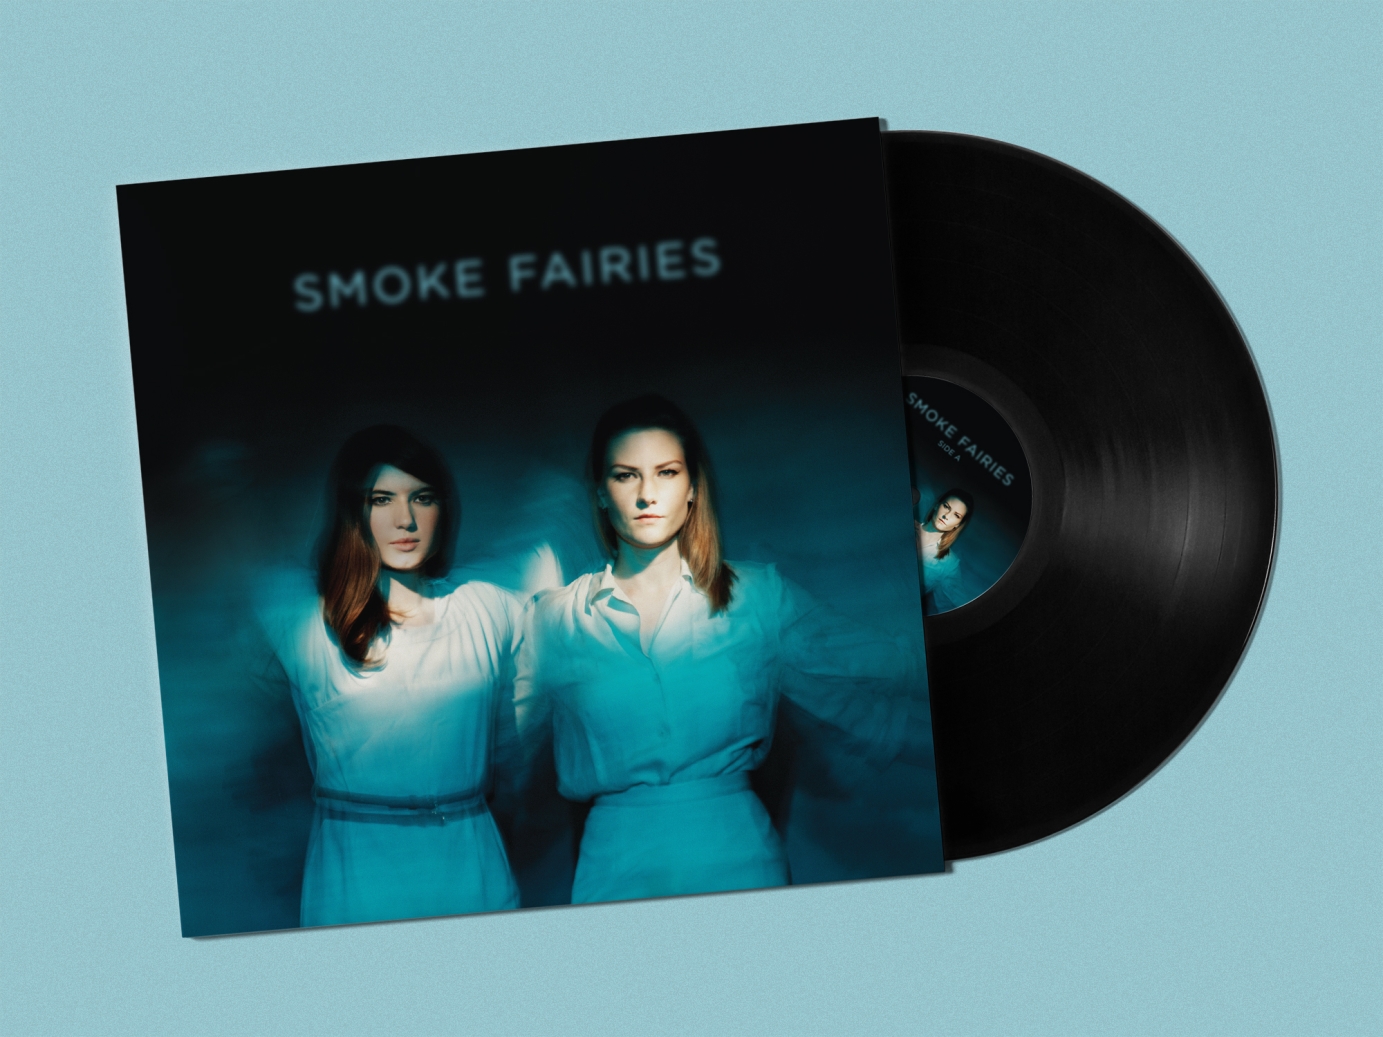 Smoke Fairies – Album Artwork